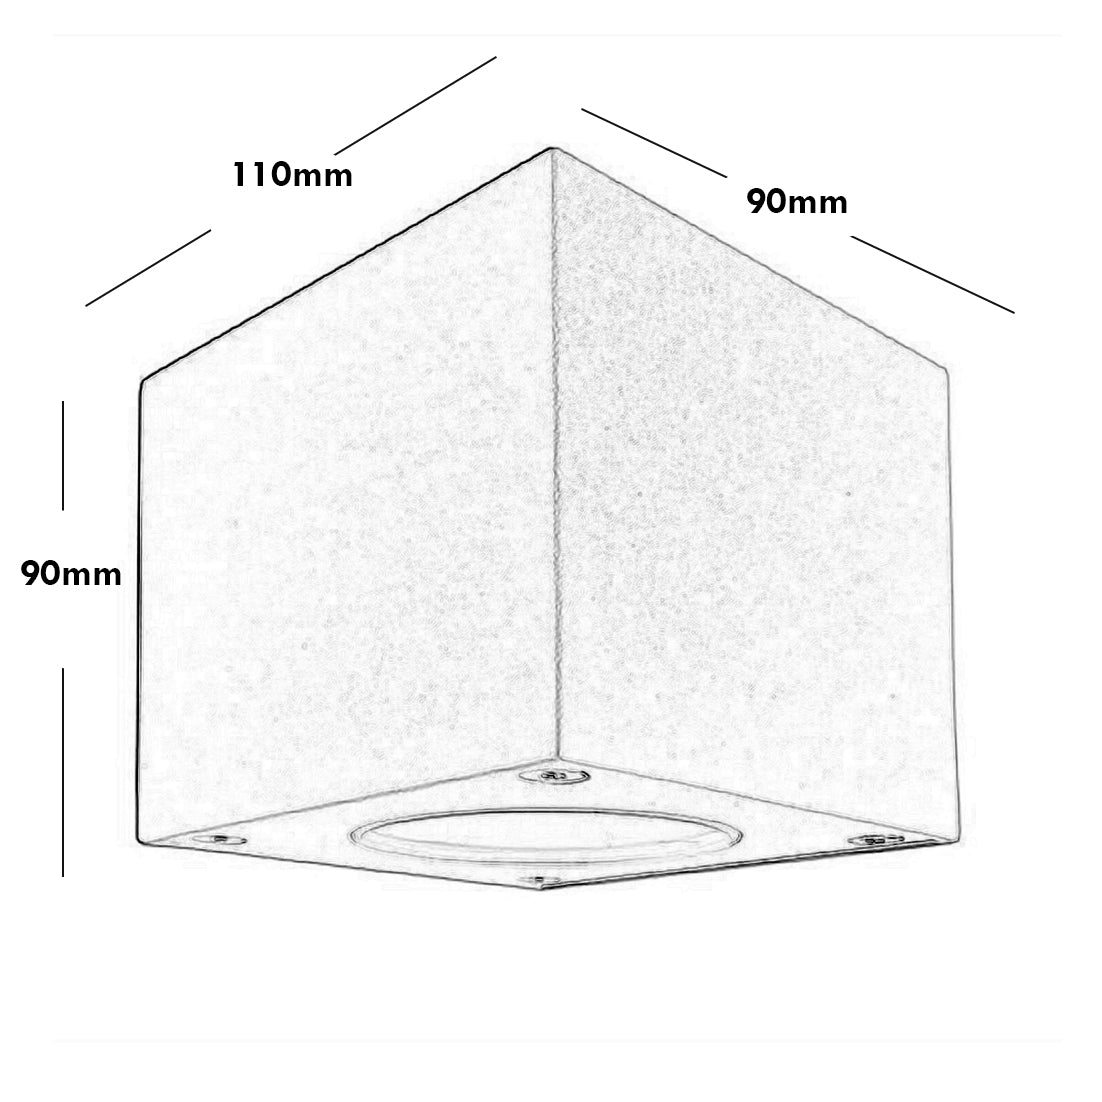 Cubodo Applique cubo LED 6W lampada impermeabile doppio fascio luce angolo regolabile balcone giardino 230V COLORE NERO